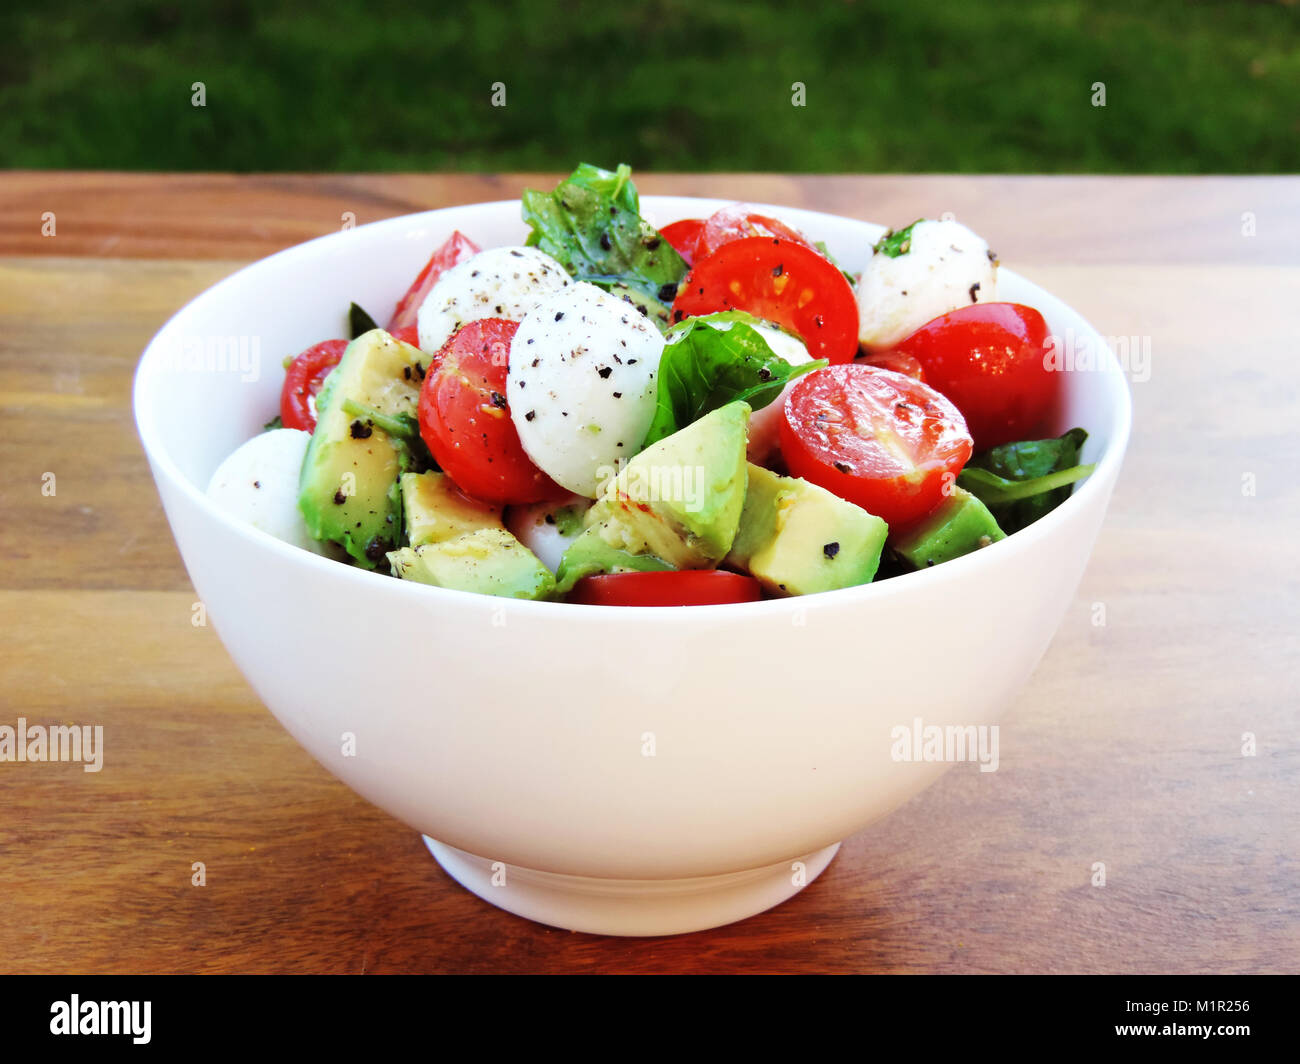 Frischer Salat oder Italienischer Salat in einer weißen Schüssel. Avocado, Cherry Tomaten und Mozzarella Salat mit frischem Basilikum. Nahaufnahme. Gourmet Salat. Stockfoto